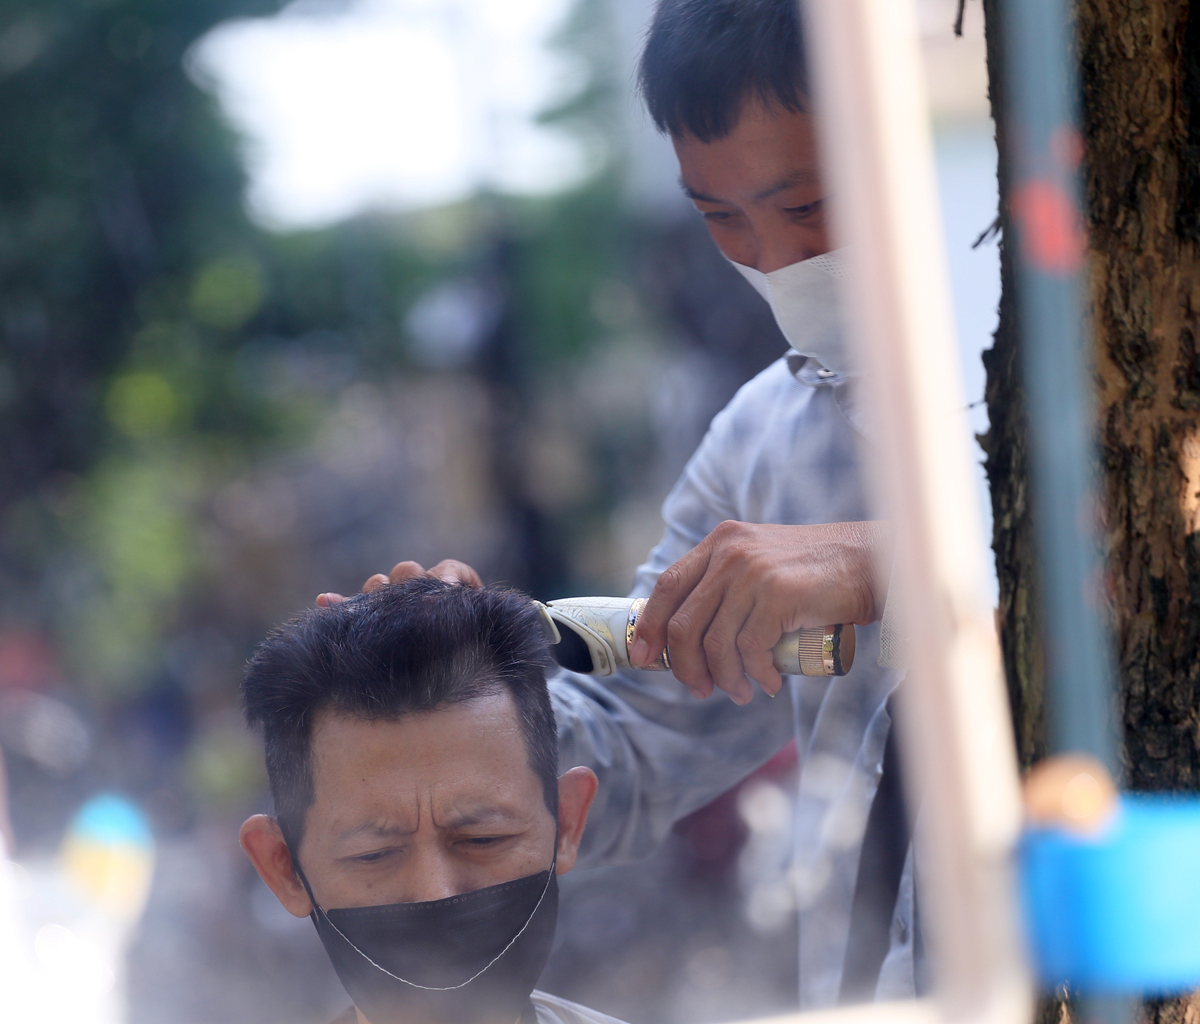 Hà Nội: Người dân ùn ùn kéo đi cắt tóc trước giờ cấm